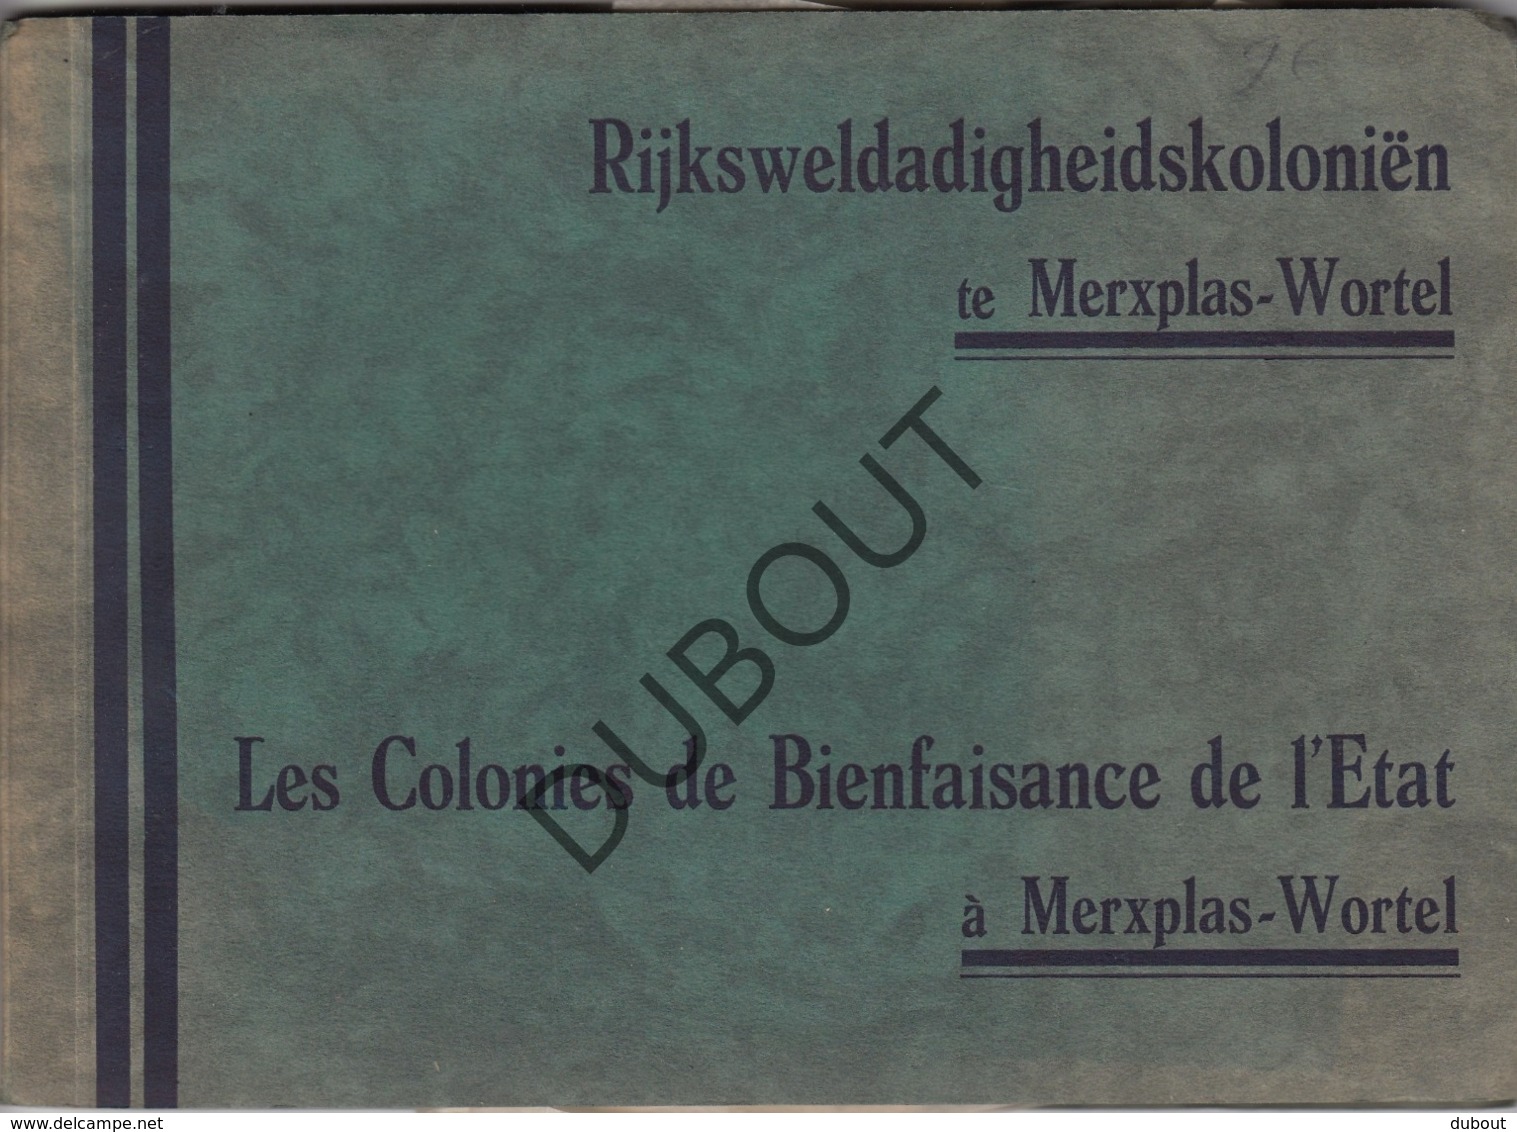 MERKSPLAS/WORTEL Rijksweldadigheidskoloniën (R457) - Oud